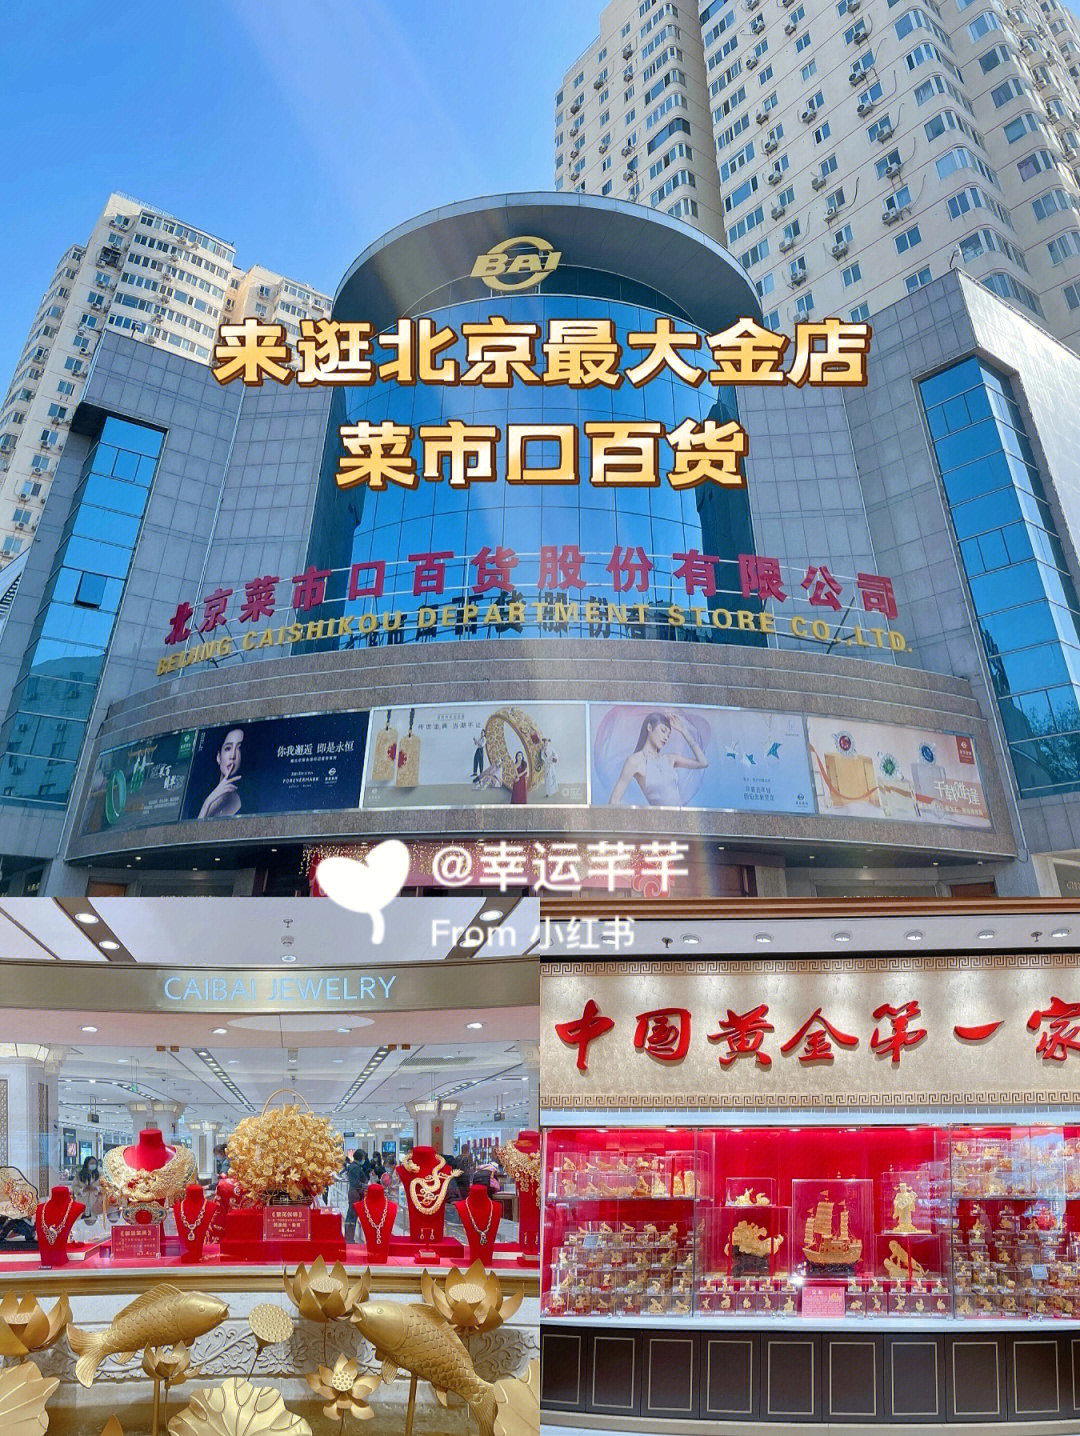 菜百全称菜市口百货,一直是北京本地很认可的品牌,不过大多数人包括我